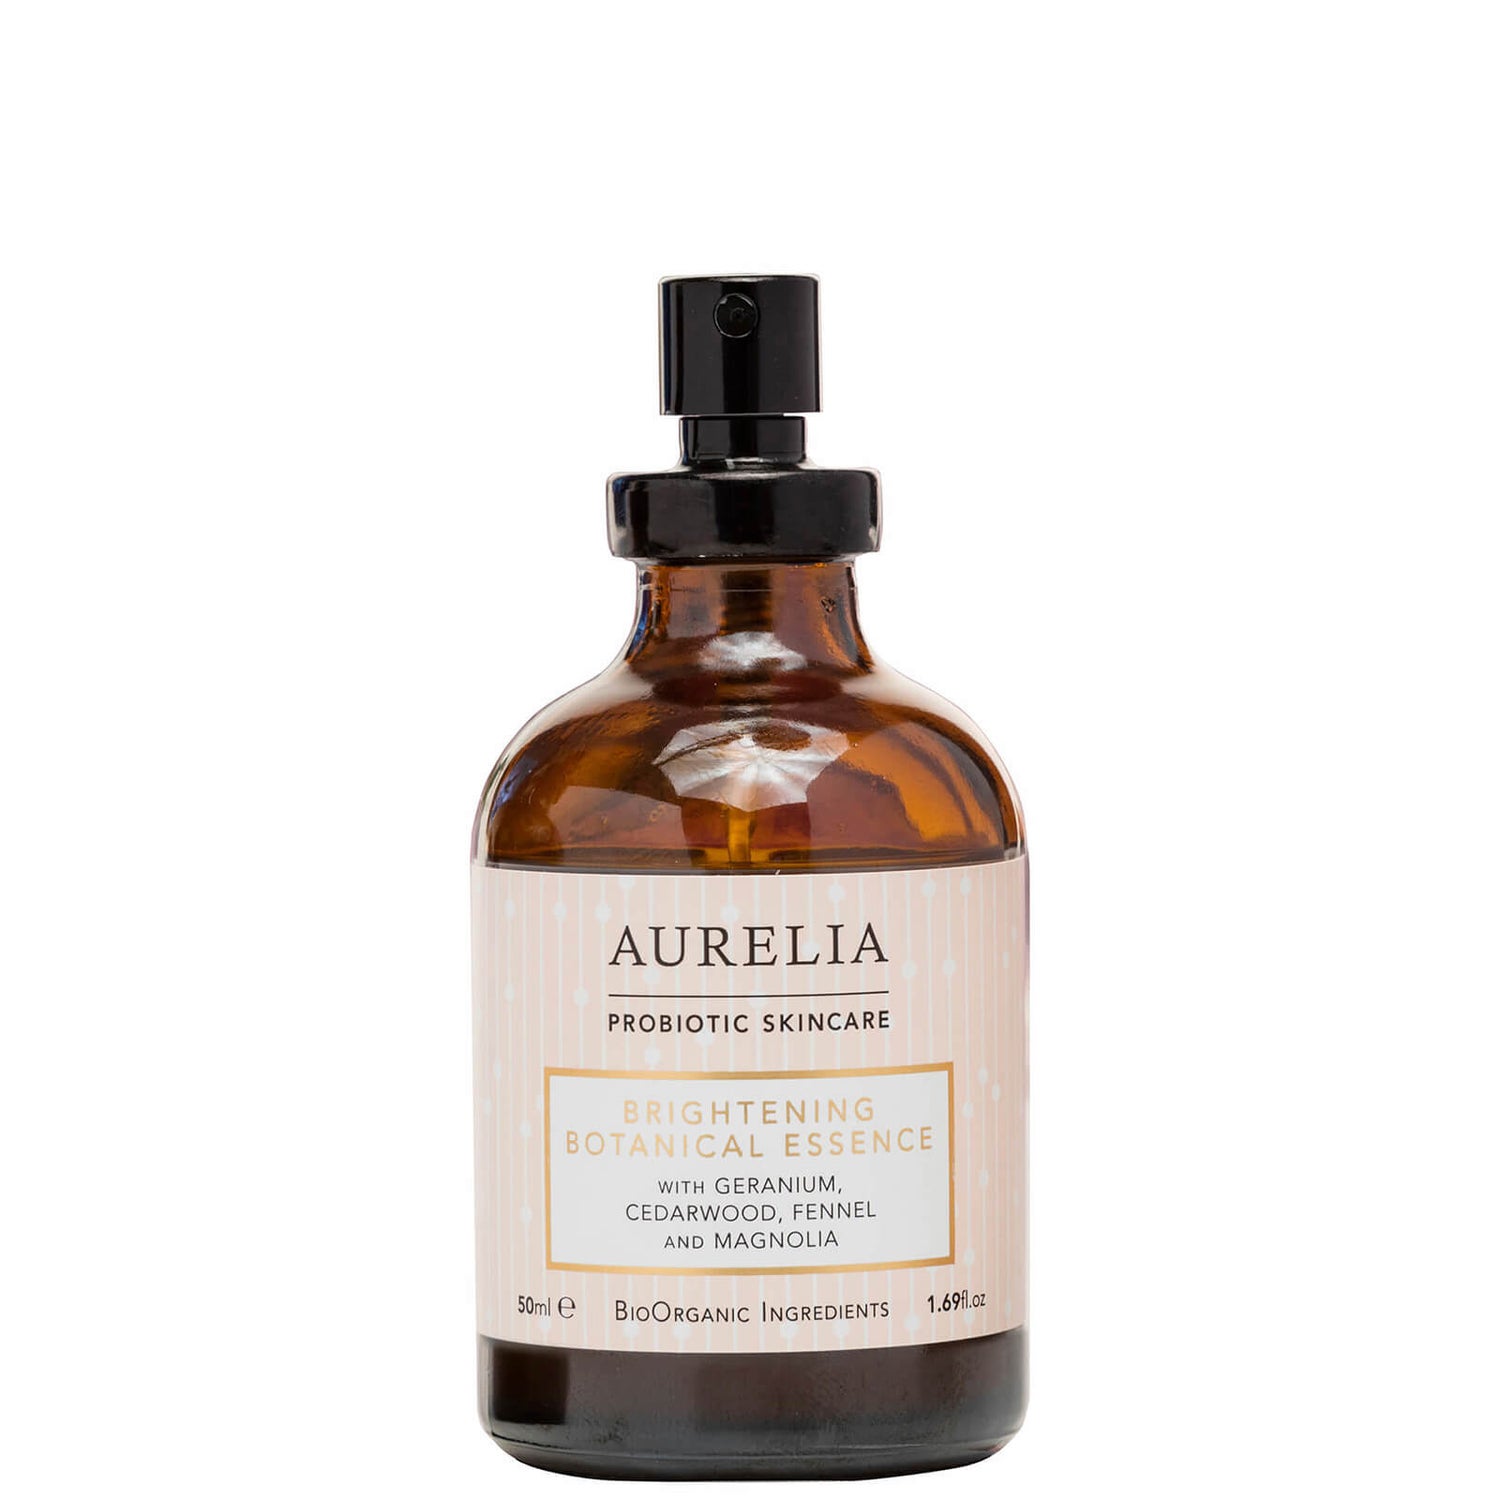 Aurelia Probiotic Skincare essenza botanica illuminante 50 ml